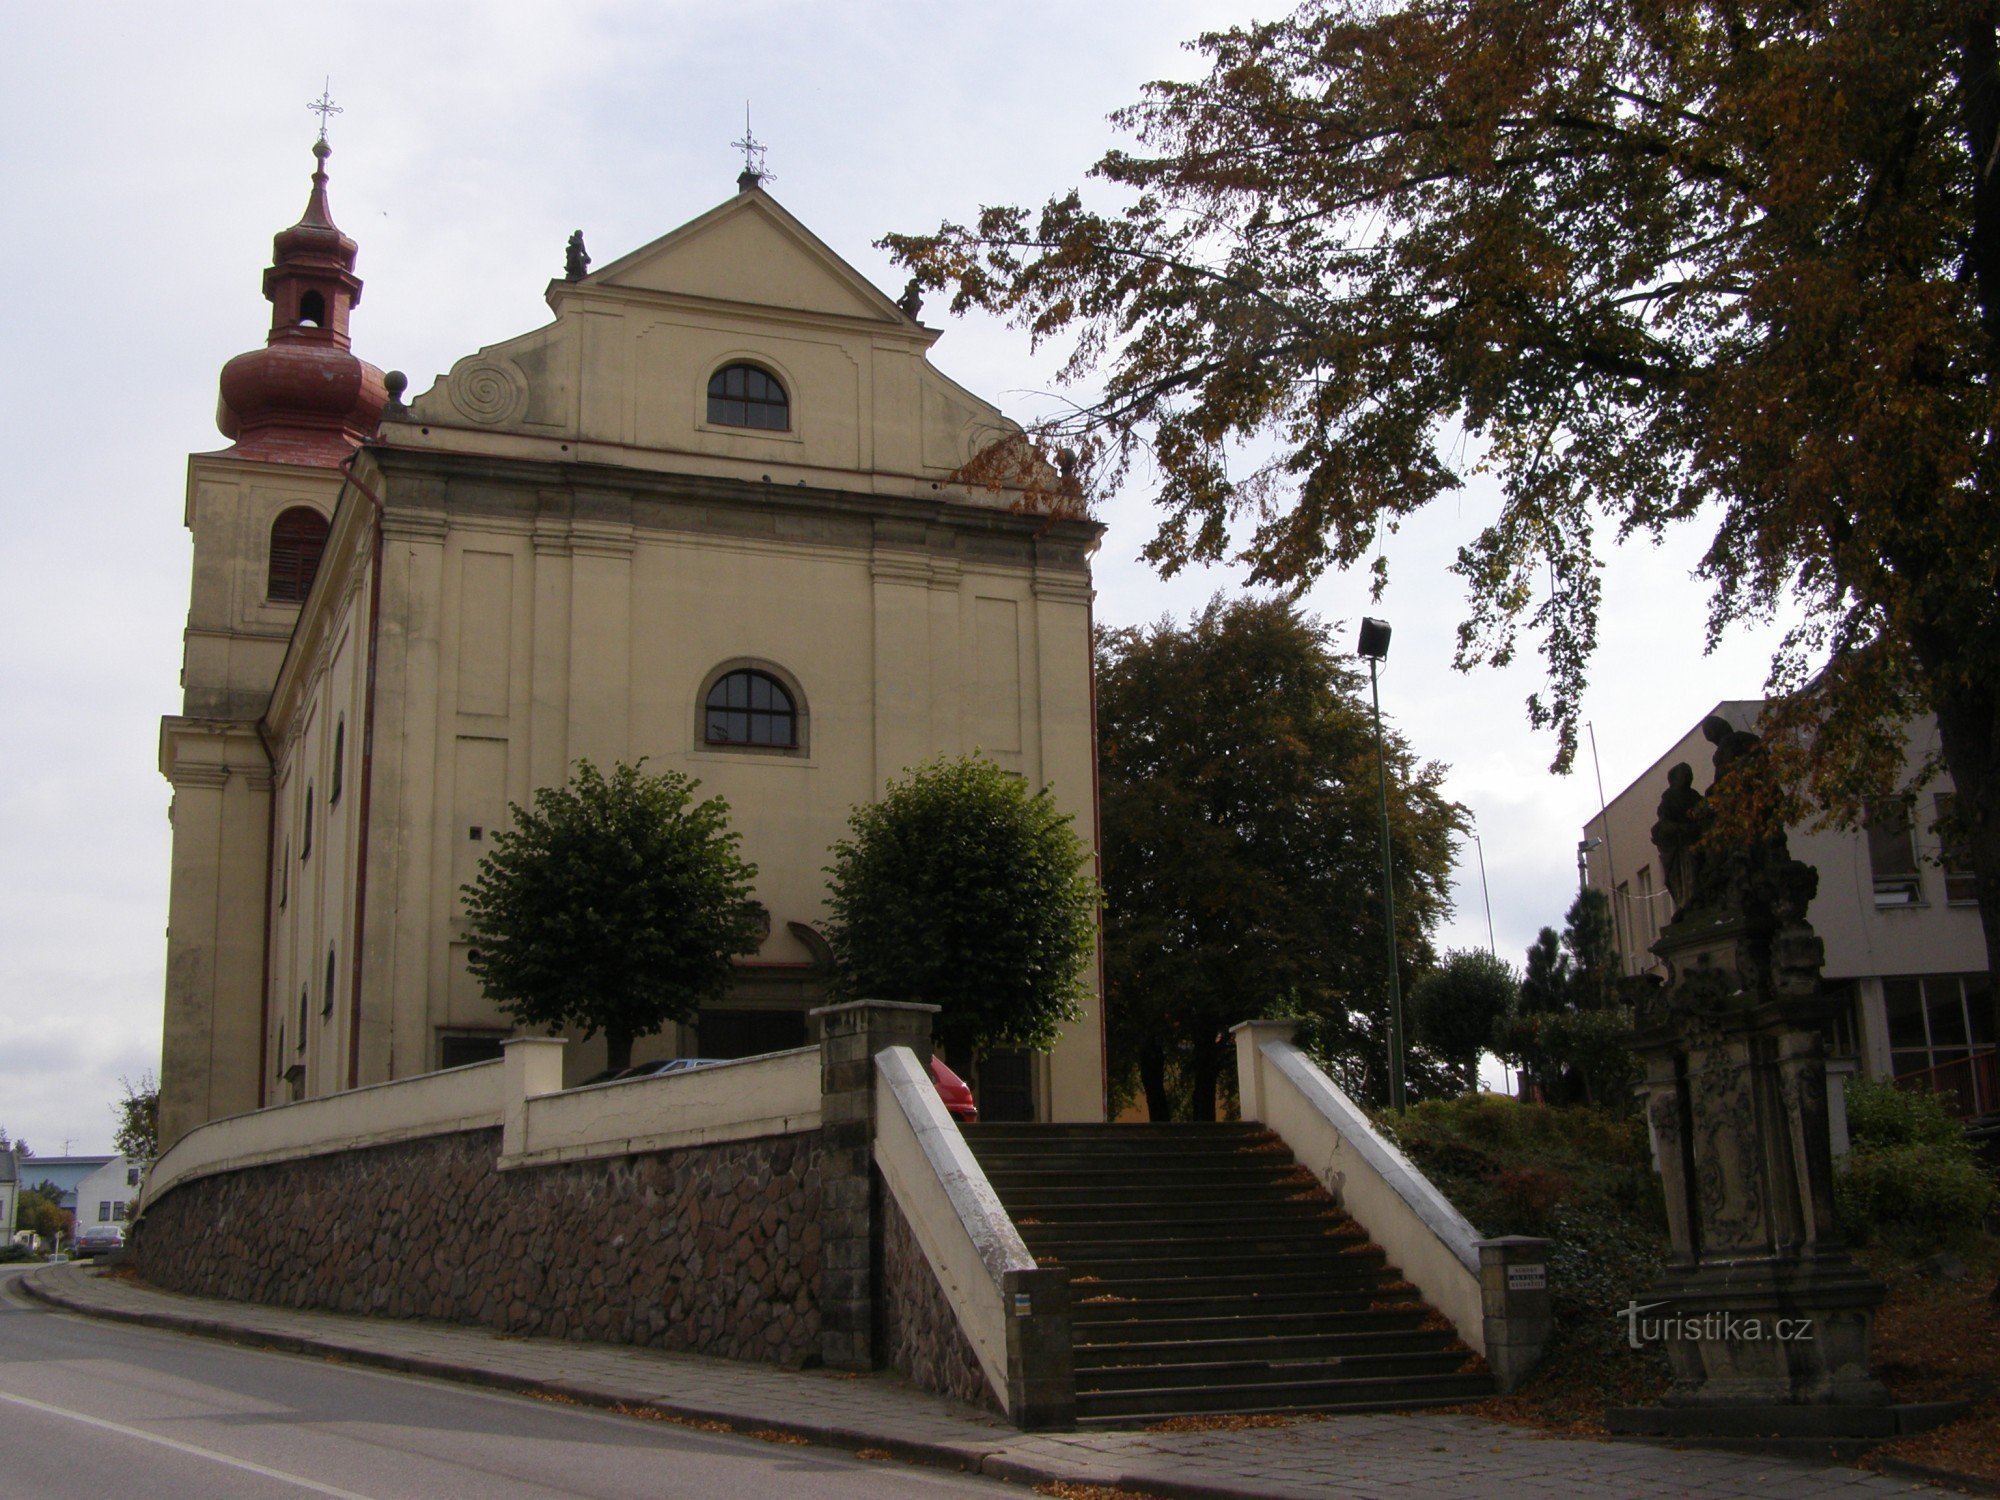 Vamberk - Church of St. Procopius